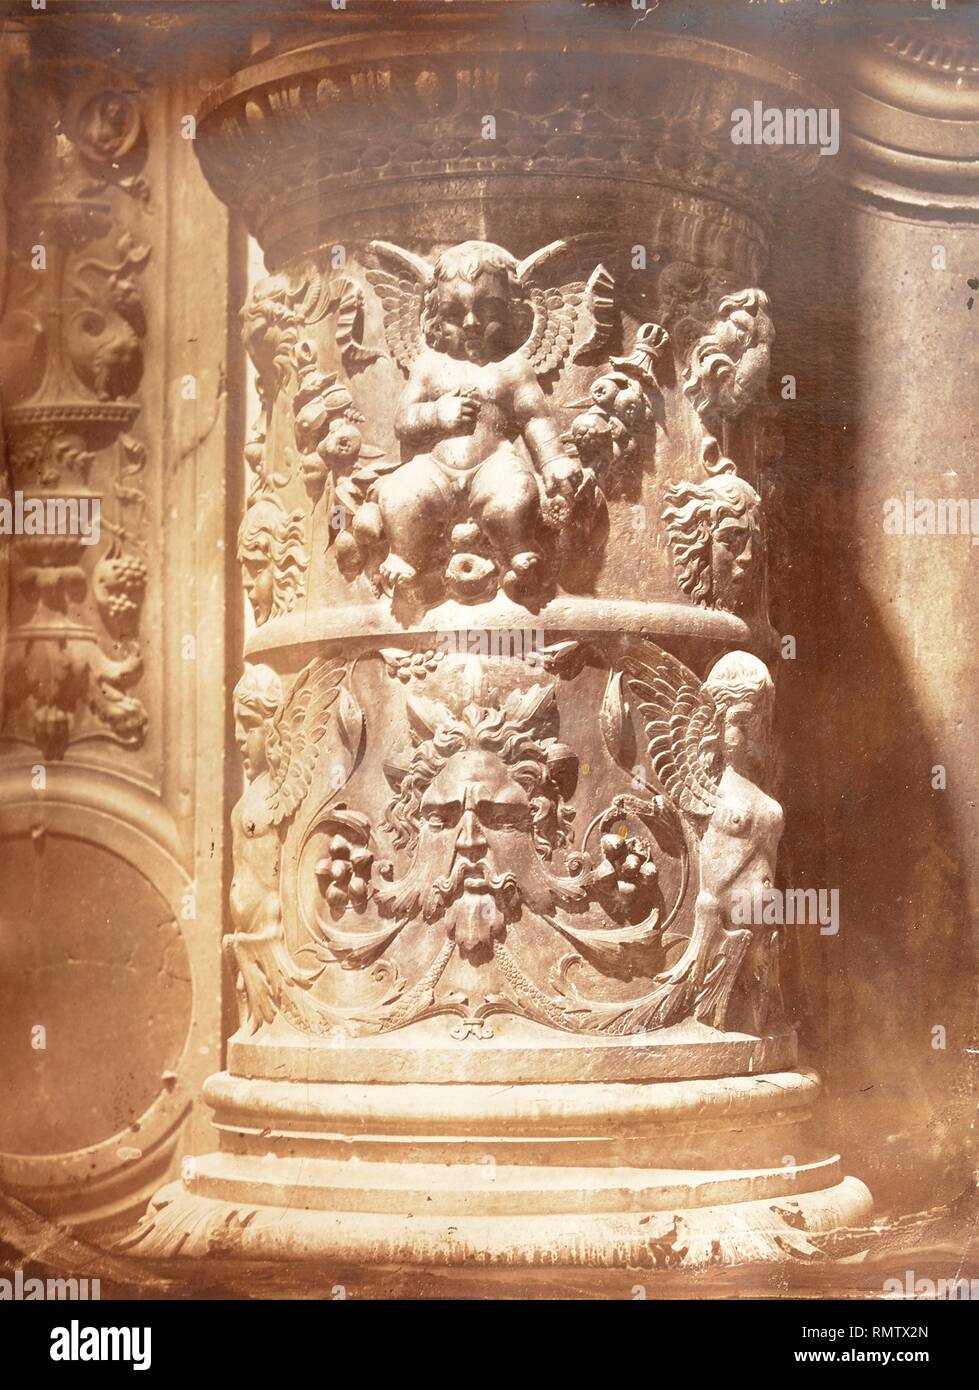 Parte inferior de una columna adosada con relieves de amorcillo, esfinges y sátiro, renacimiento italiano. Stock Photo